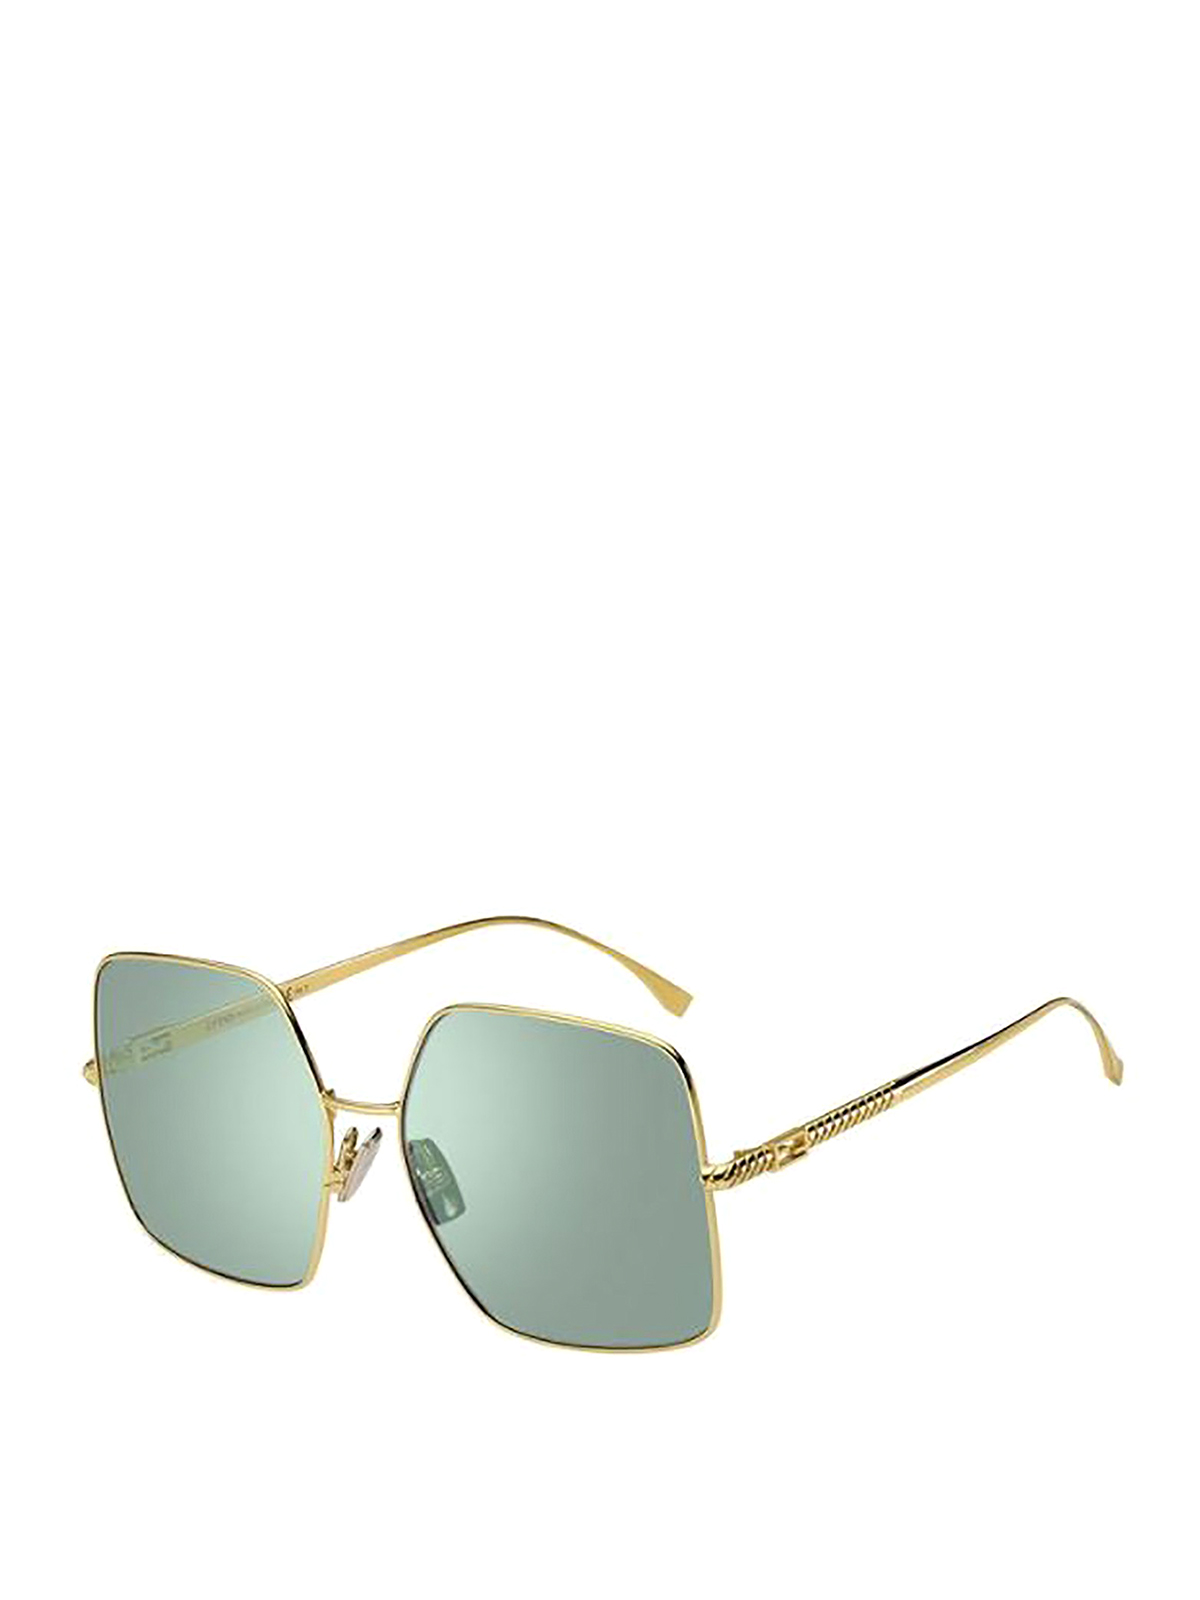 Fendi Faded Baguette Sunglasses In Gold